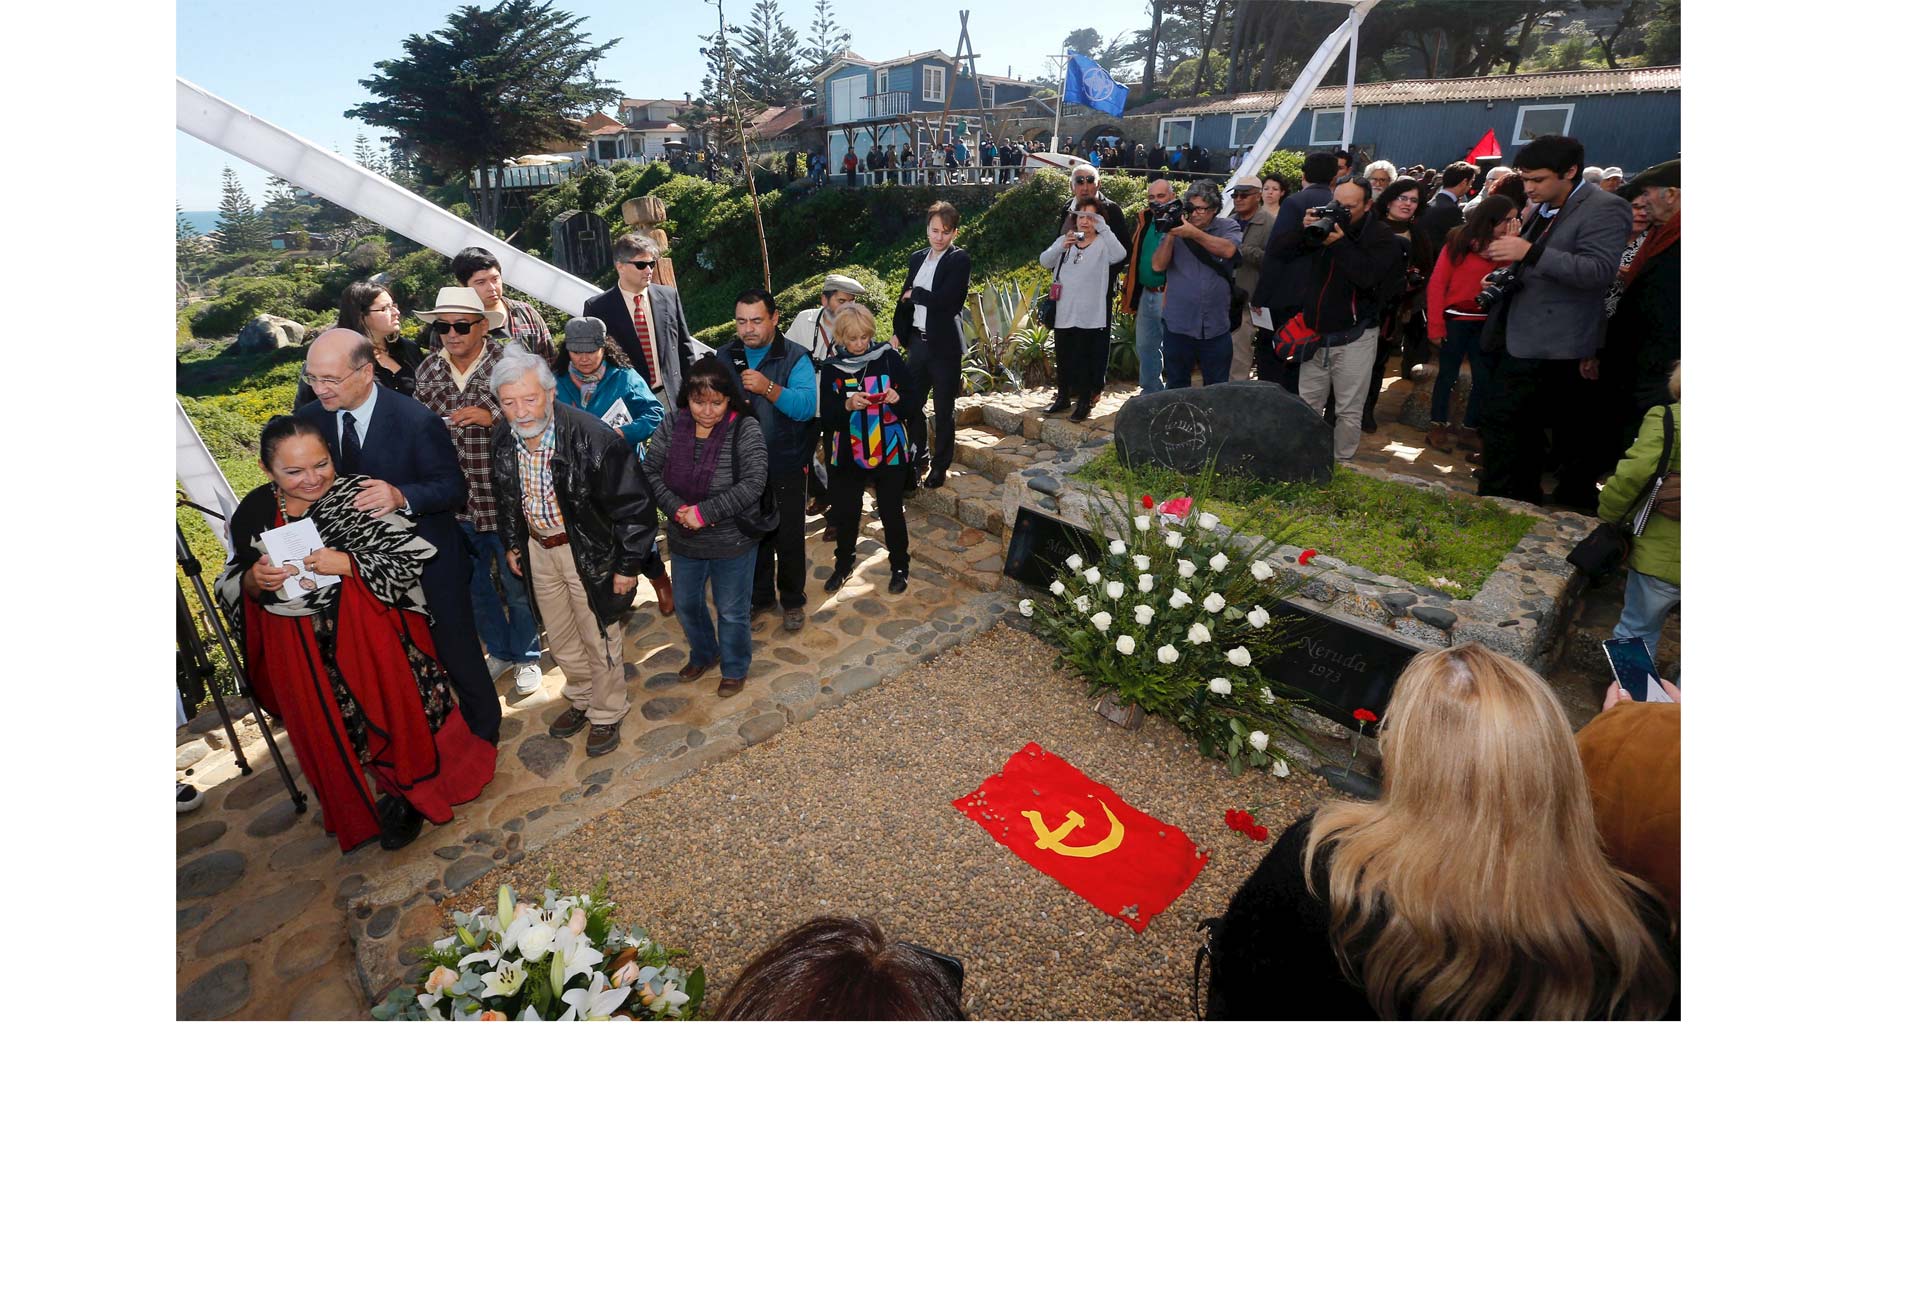 Los restos del poeta chileno fueron trasladados al patio de su casa en Isla Negra. Allí lo enterraron